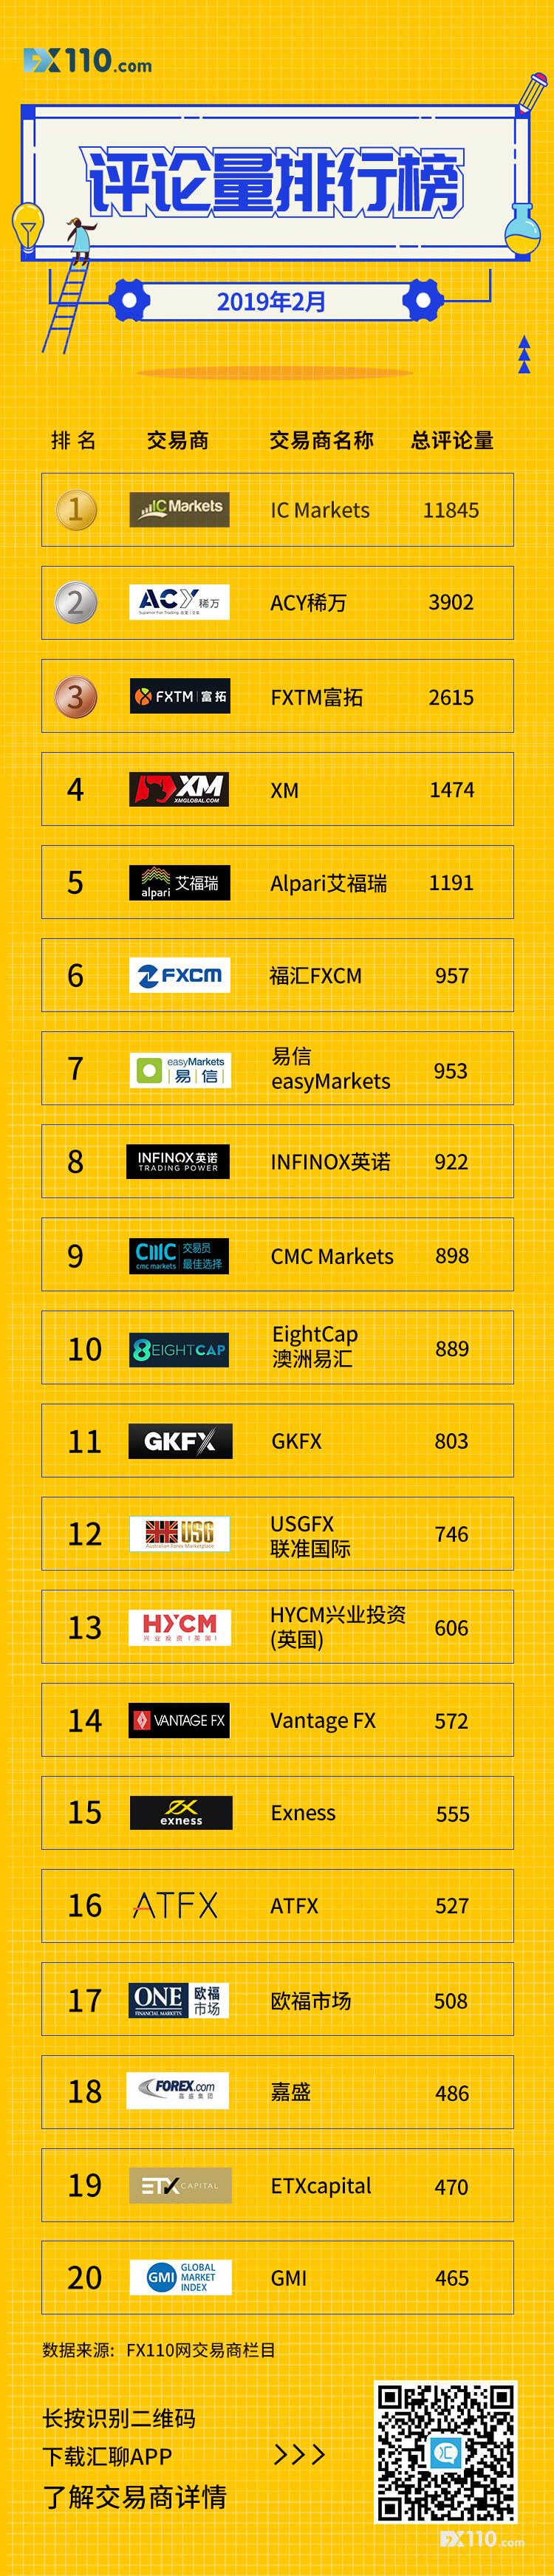 【榜单】2019年2月交易商评论量TOP20排行榜